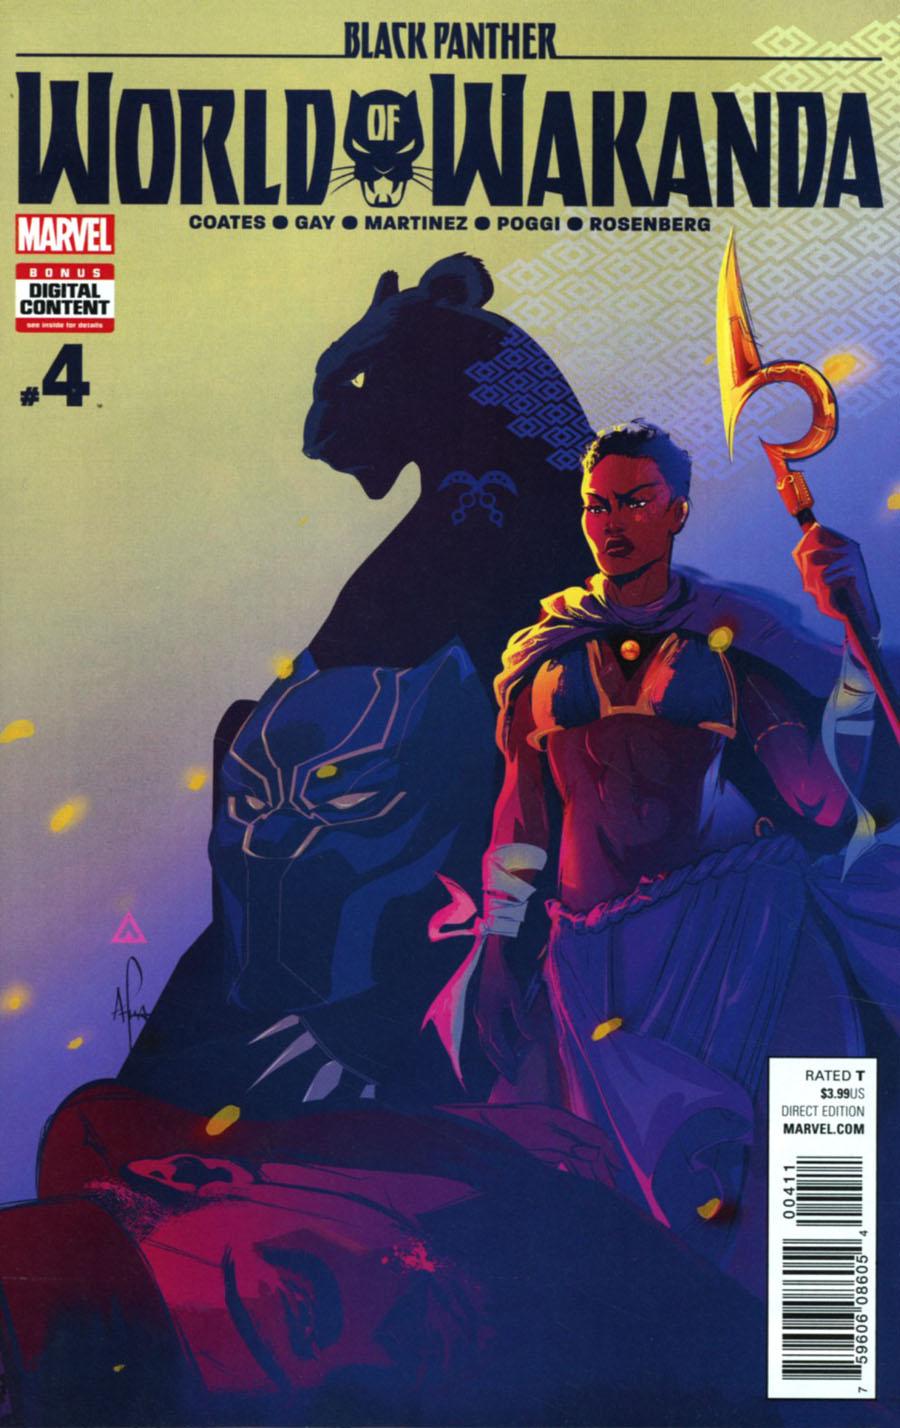 Black Panther World Of Wakanda Vol. 1 #4